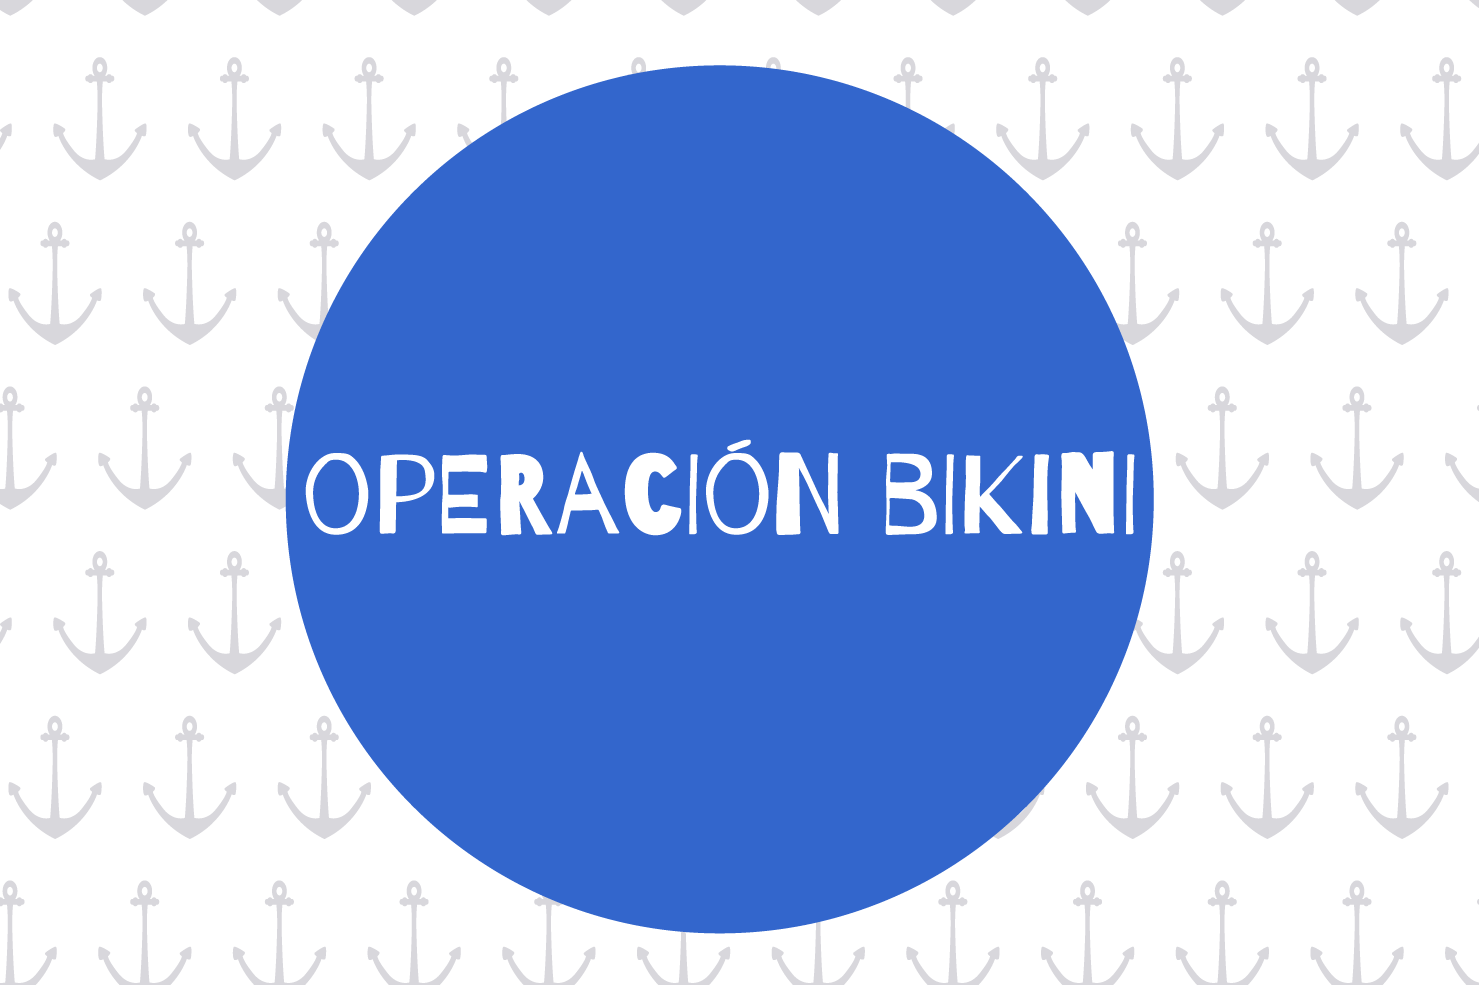 Operación bikini para empresas